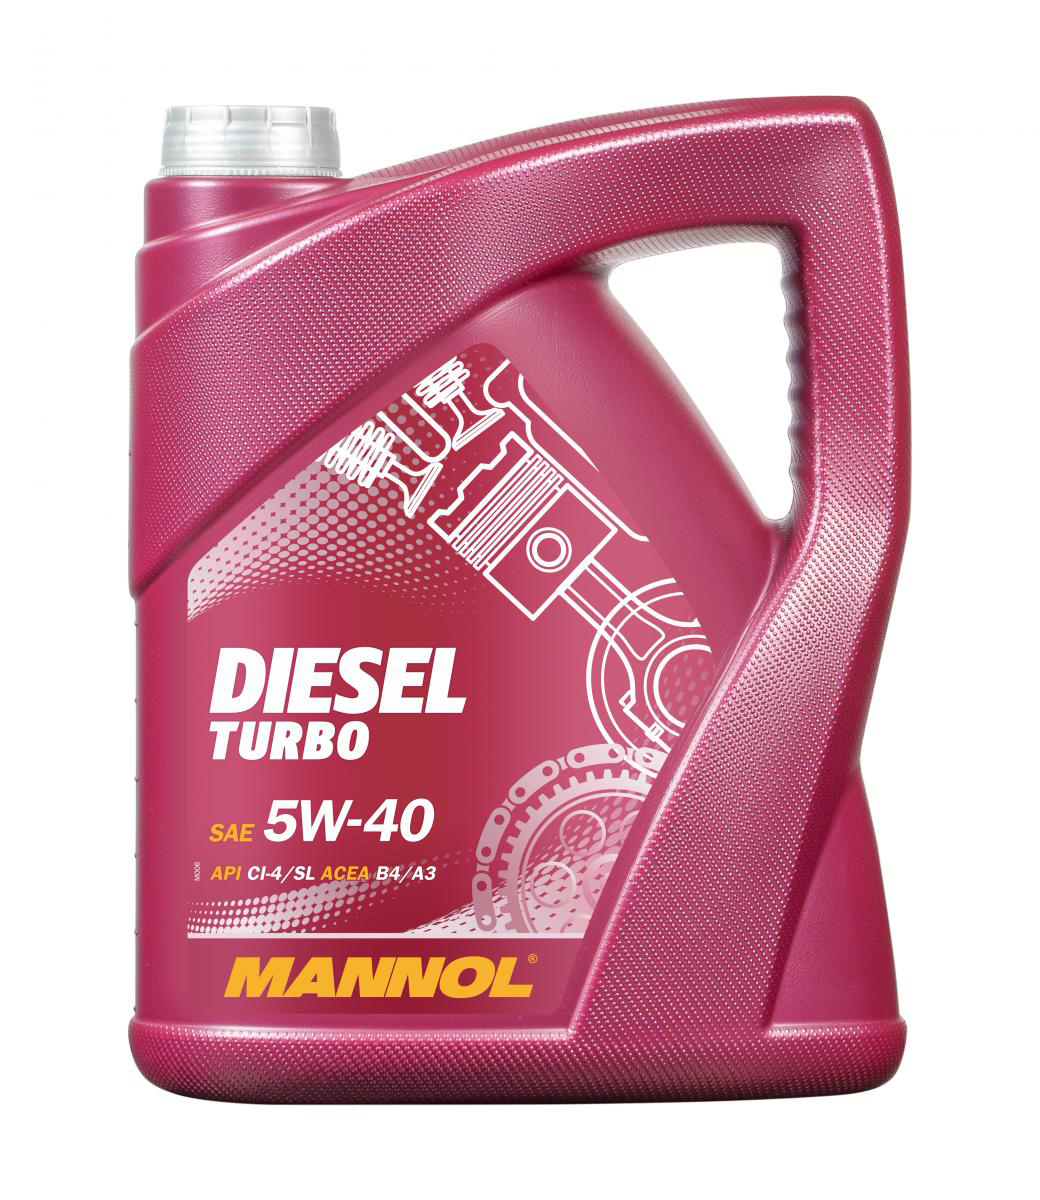 Diesel Turbo 5W-40